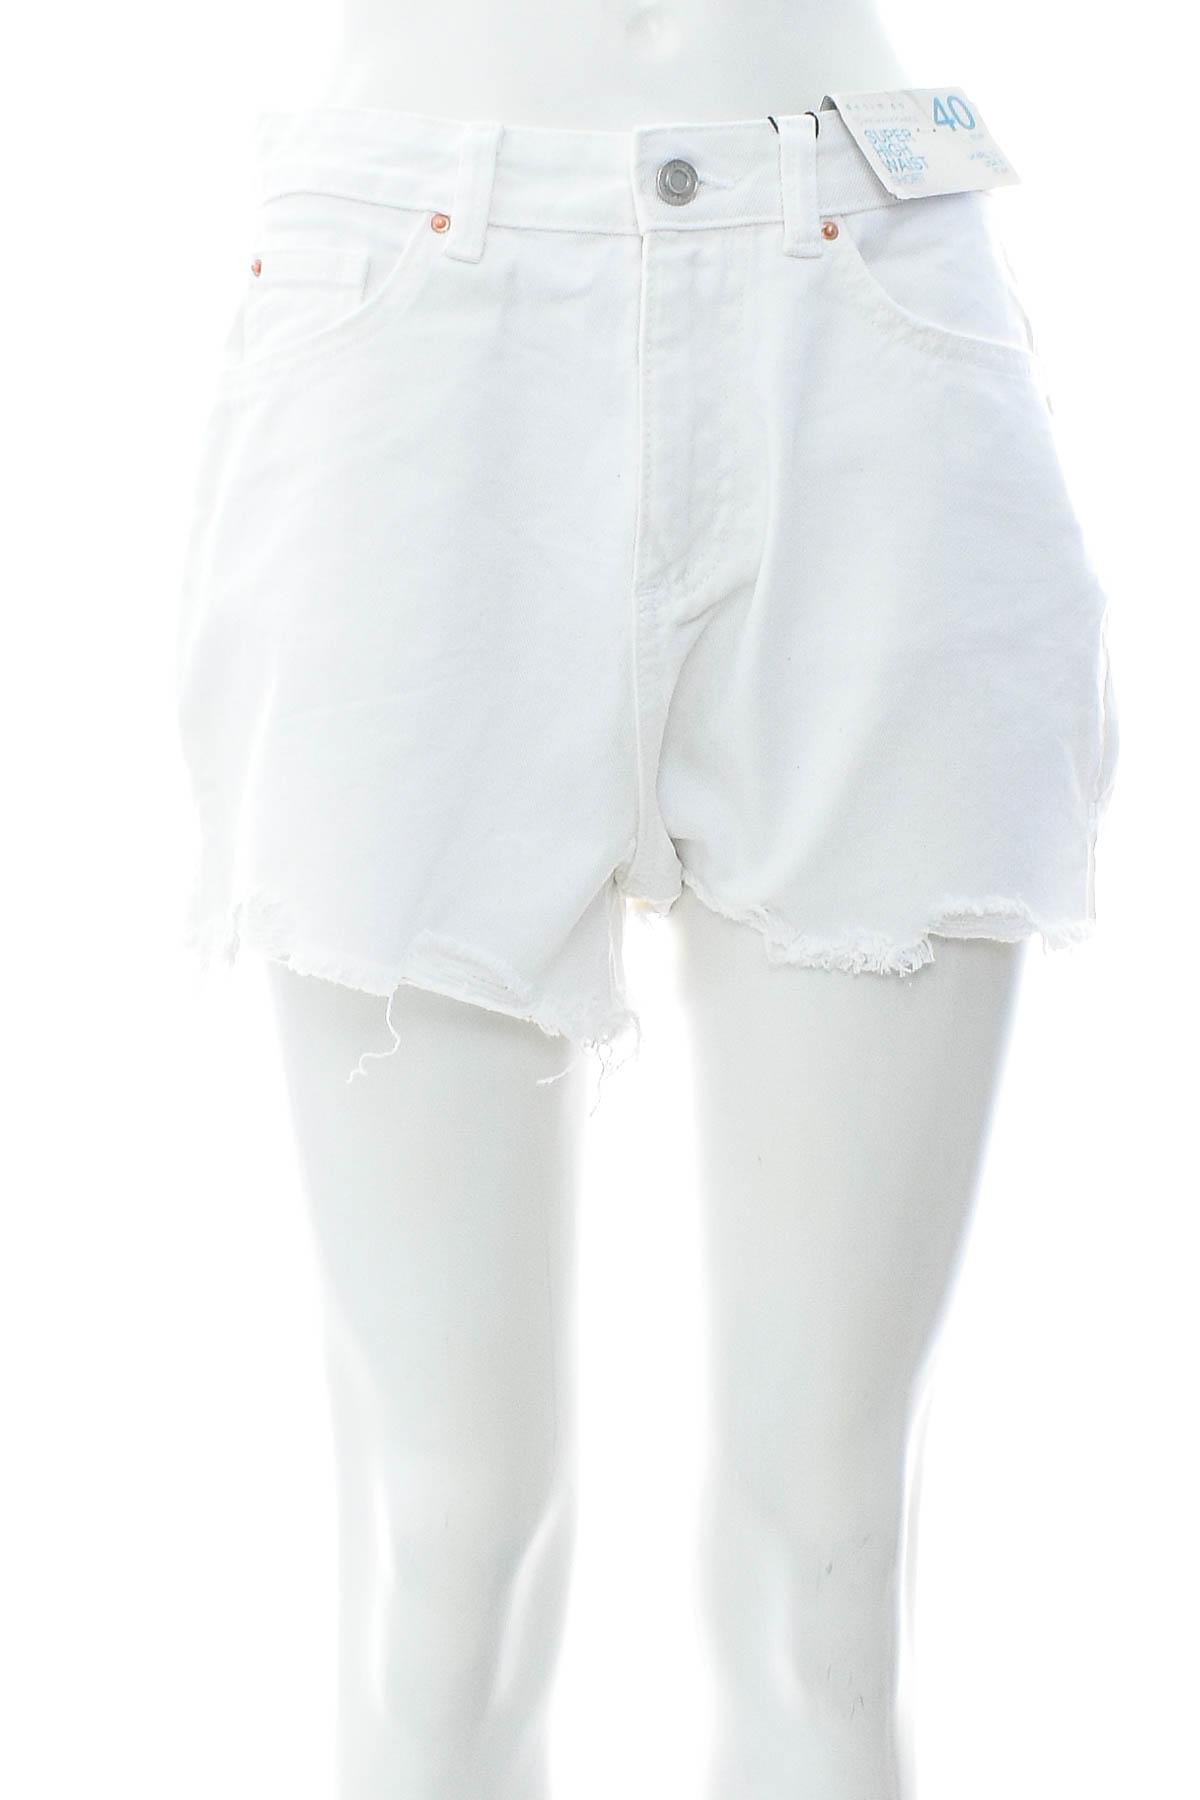 Γυναικείο κοντό παντελόνι - Denim Co. - 0